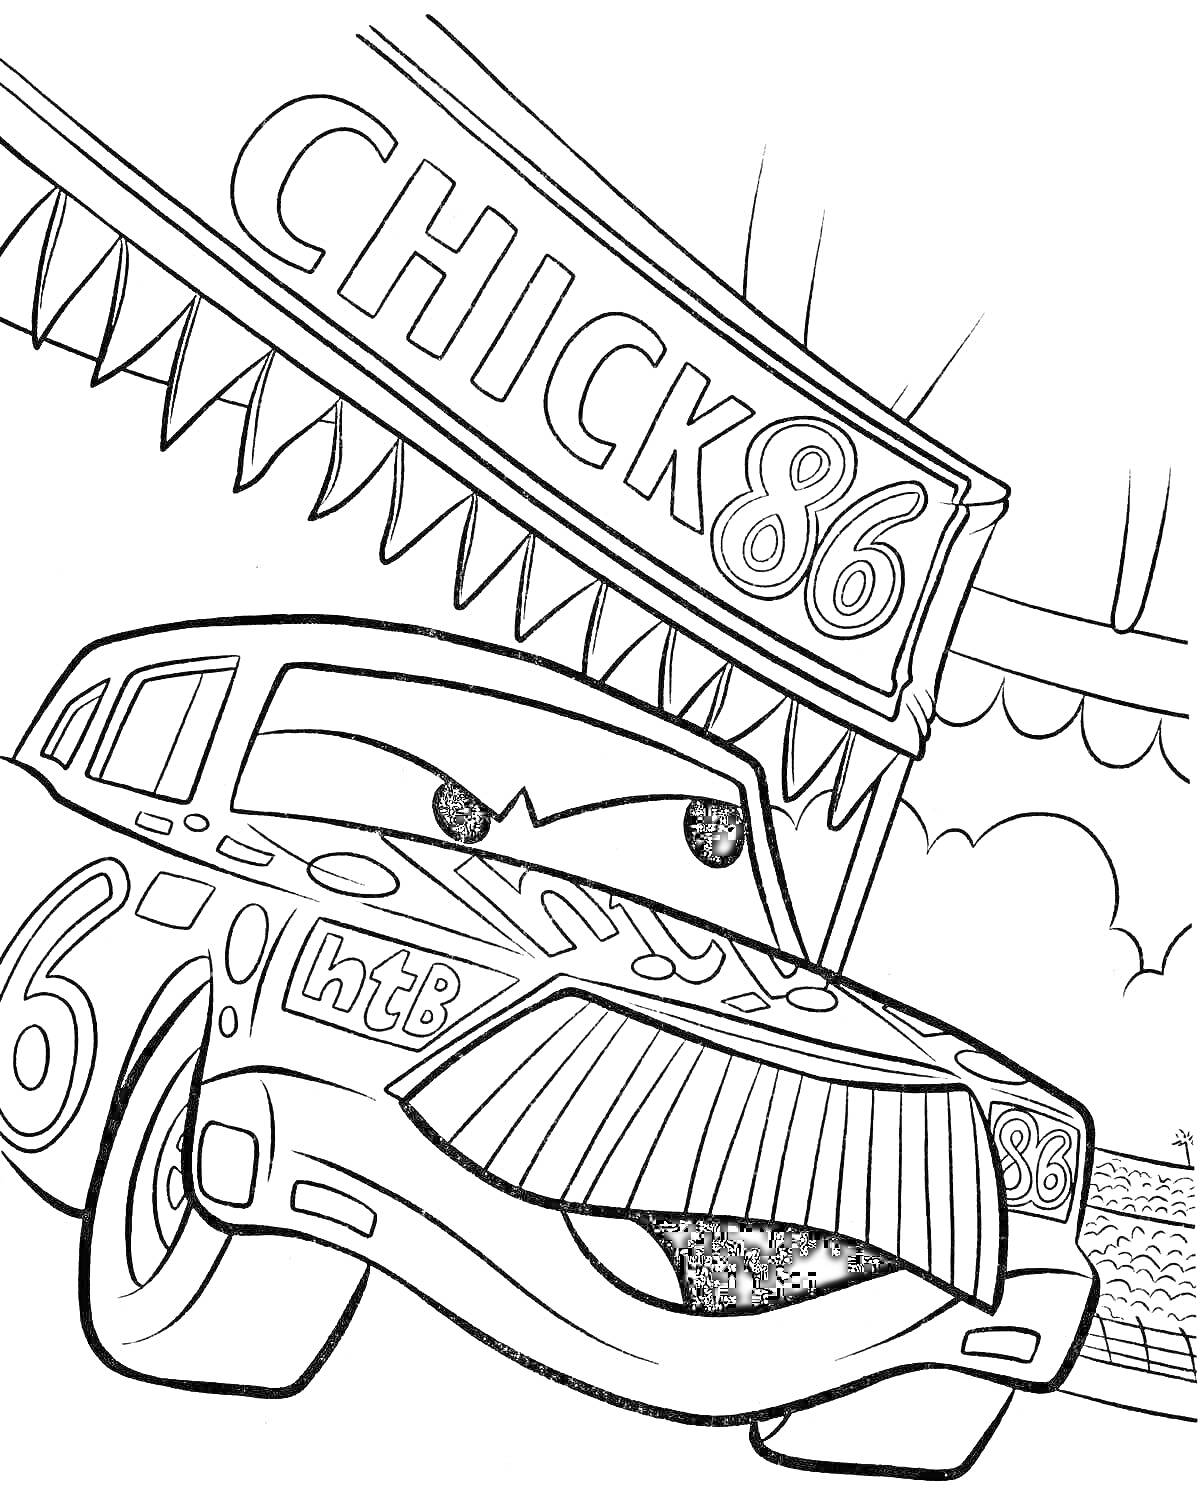 Раскраска Машина Чико Хикс под вывеской CHICK 86 на гоночной трассе